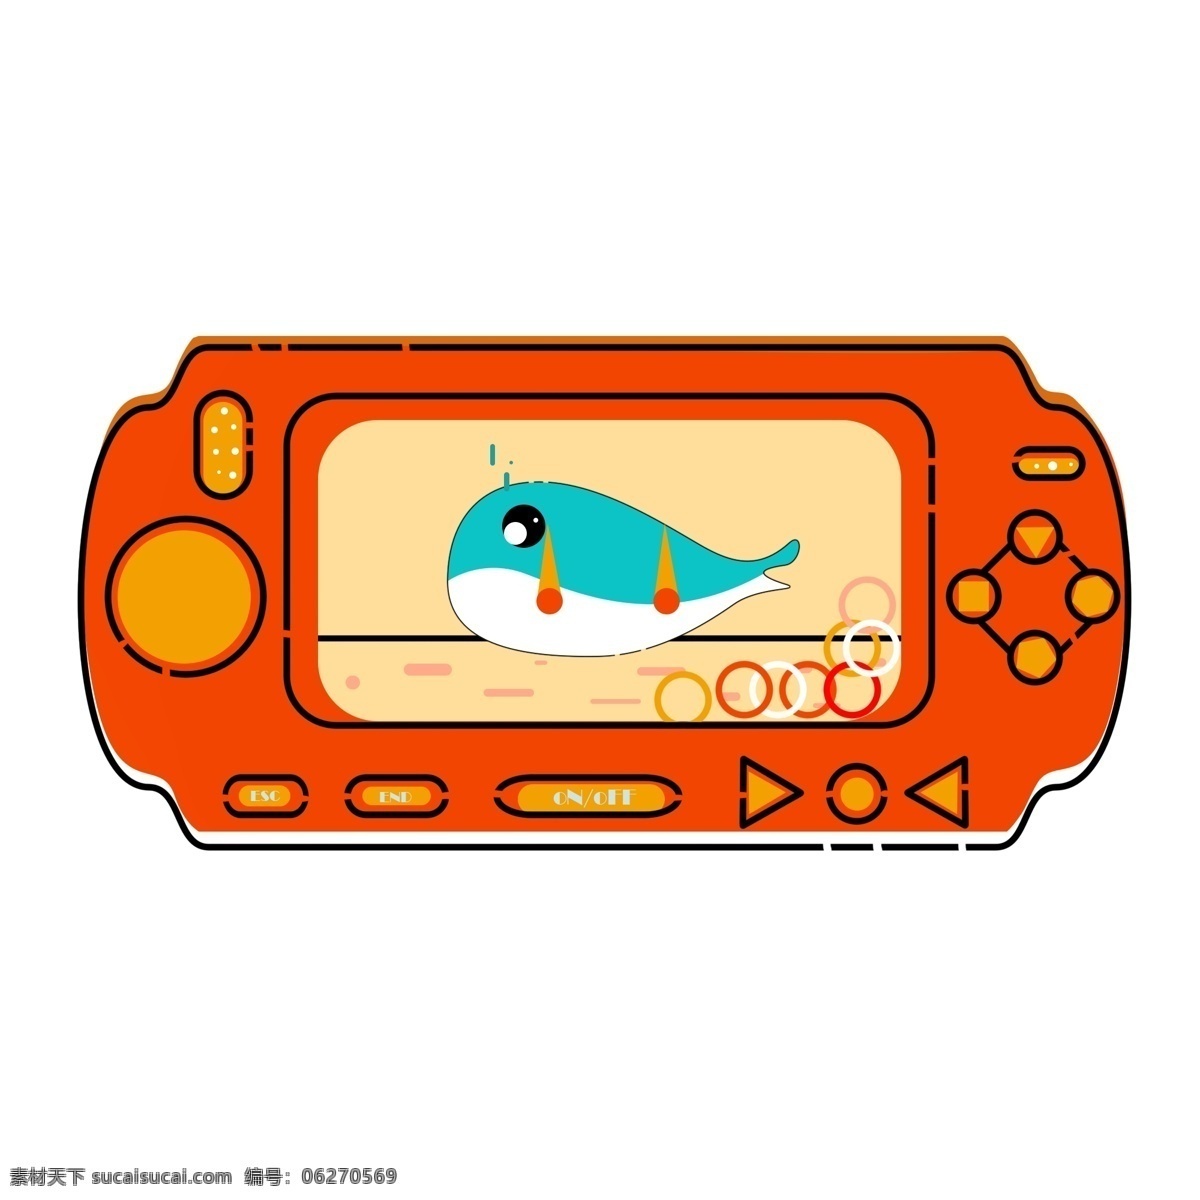 橙色 玩具 游戏 水机 游戏水机 可爱 卡通 手绘